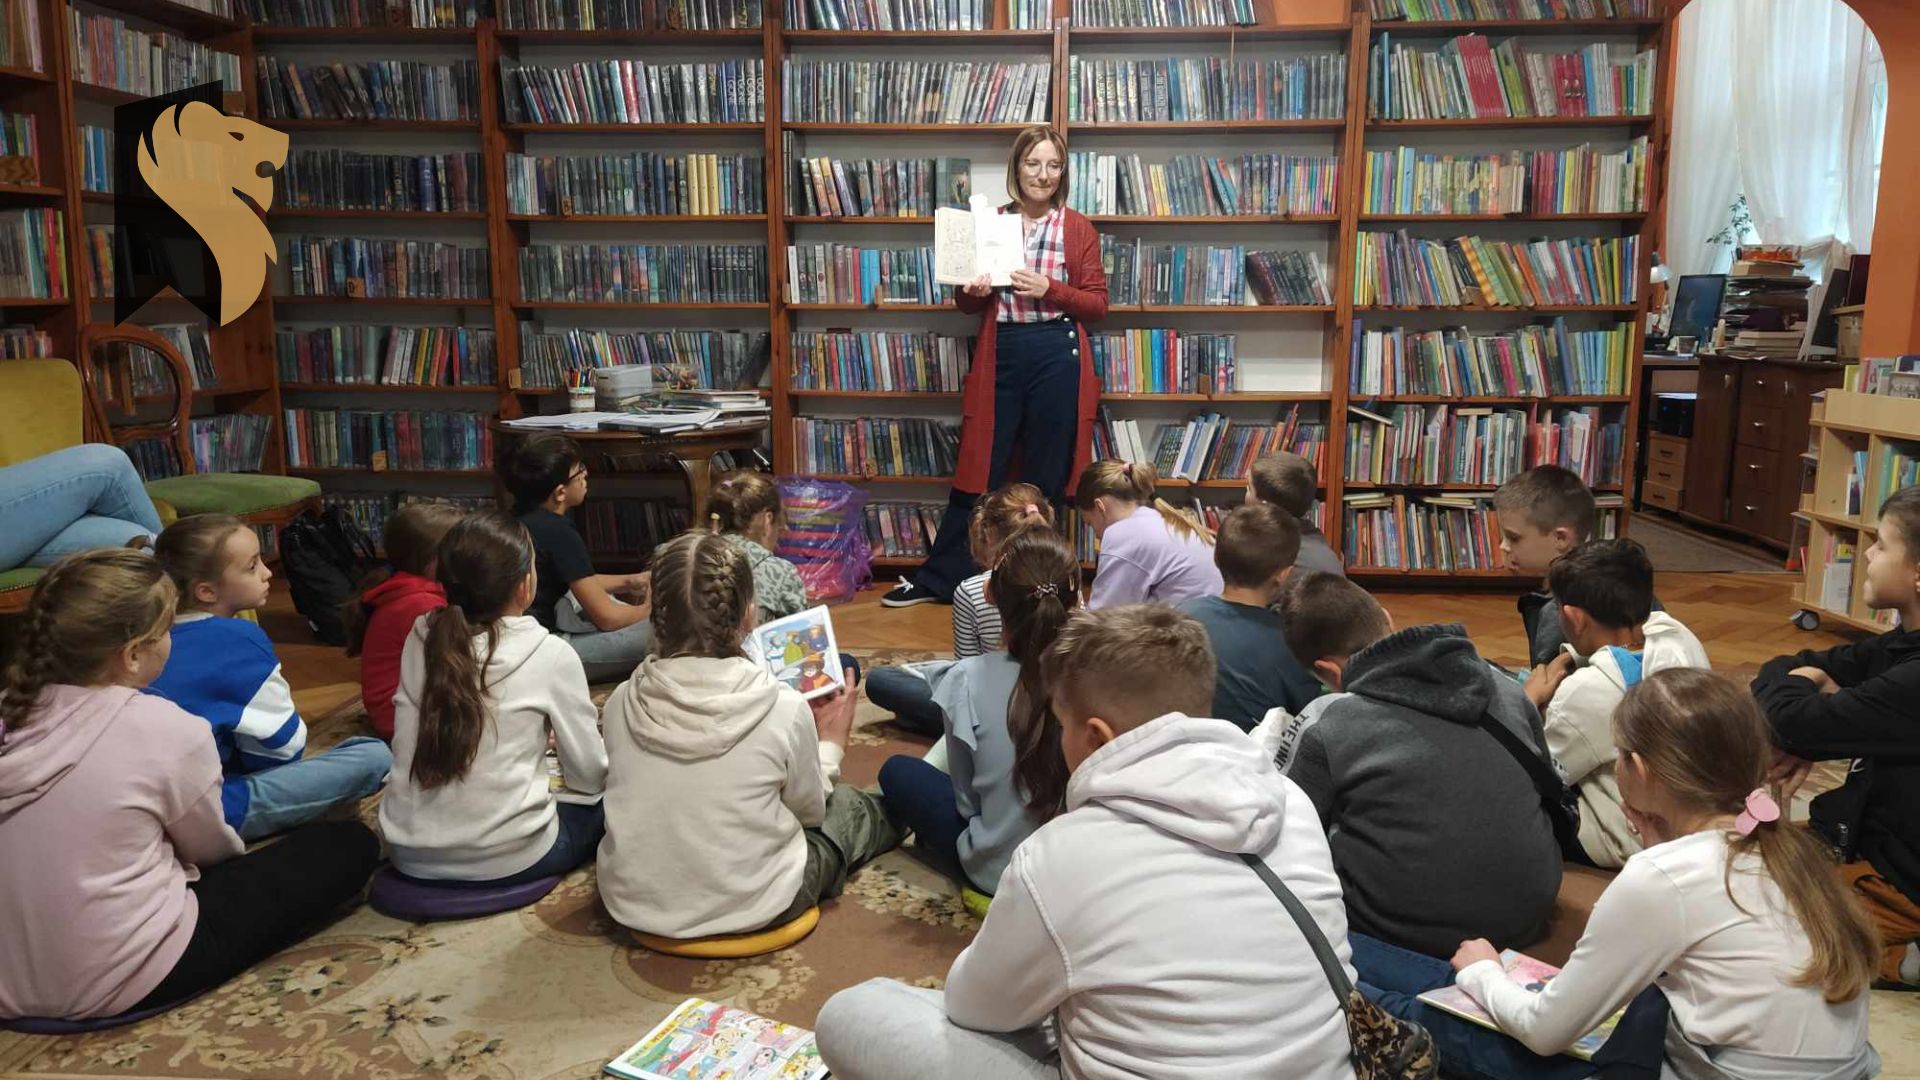 Dzieci siedzą na podłodze i patrzą w kierunku bibliotekarki. Bibliotekarka trzyma przed sobą otwartą książkę i pokazuje ją dzieciom. W tle stolik z materiałami plastycznymi i regały z książkami.